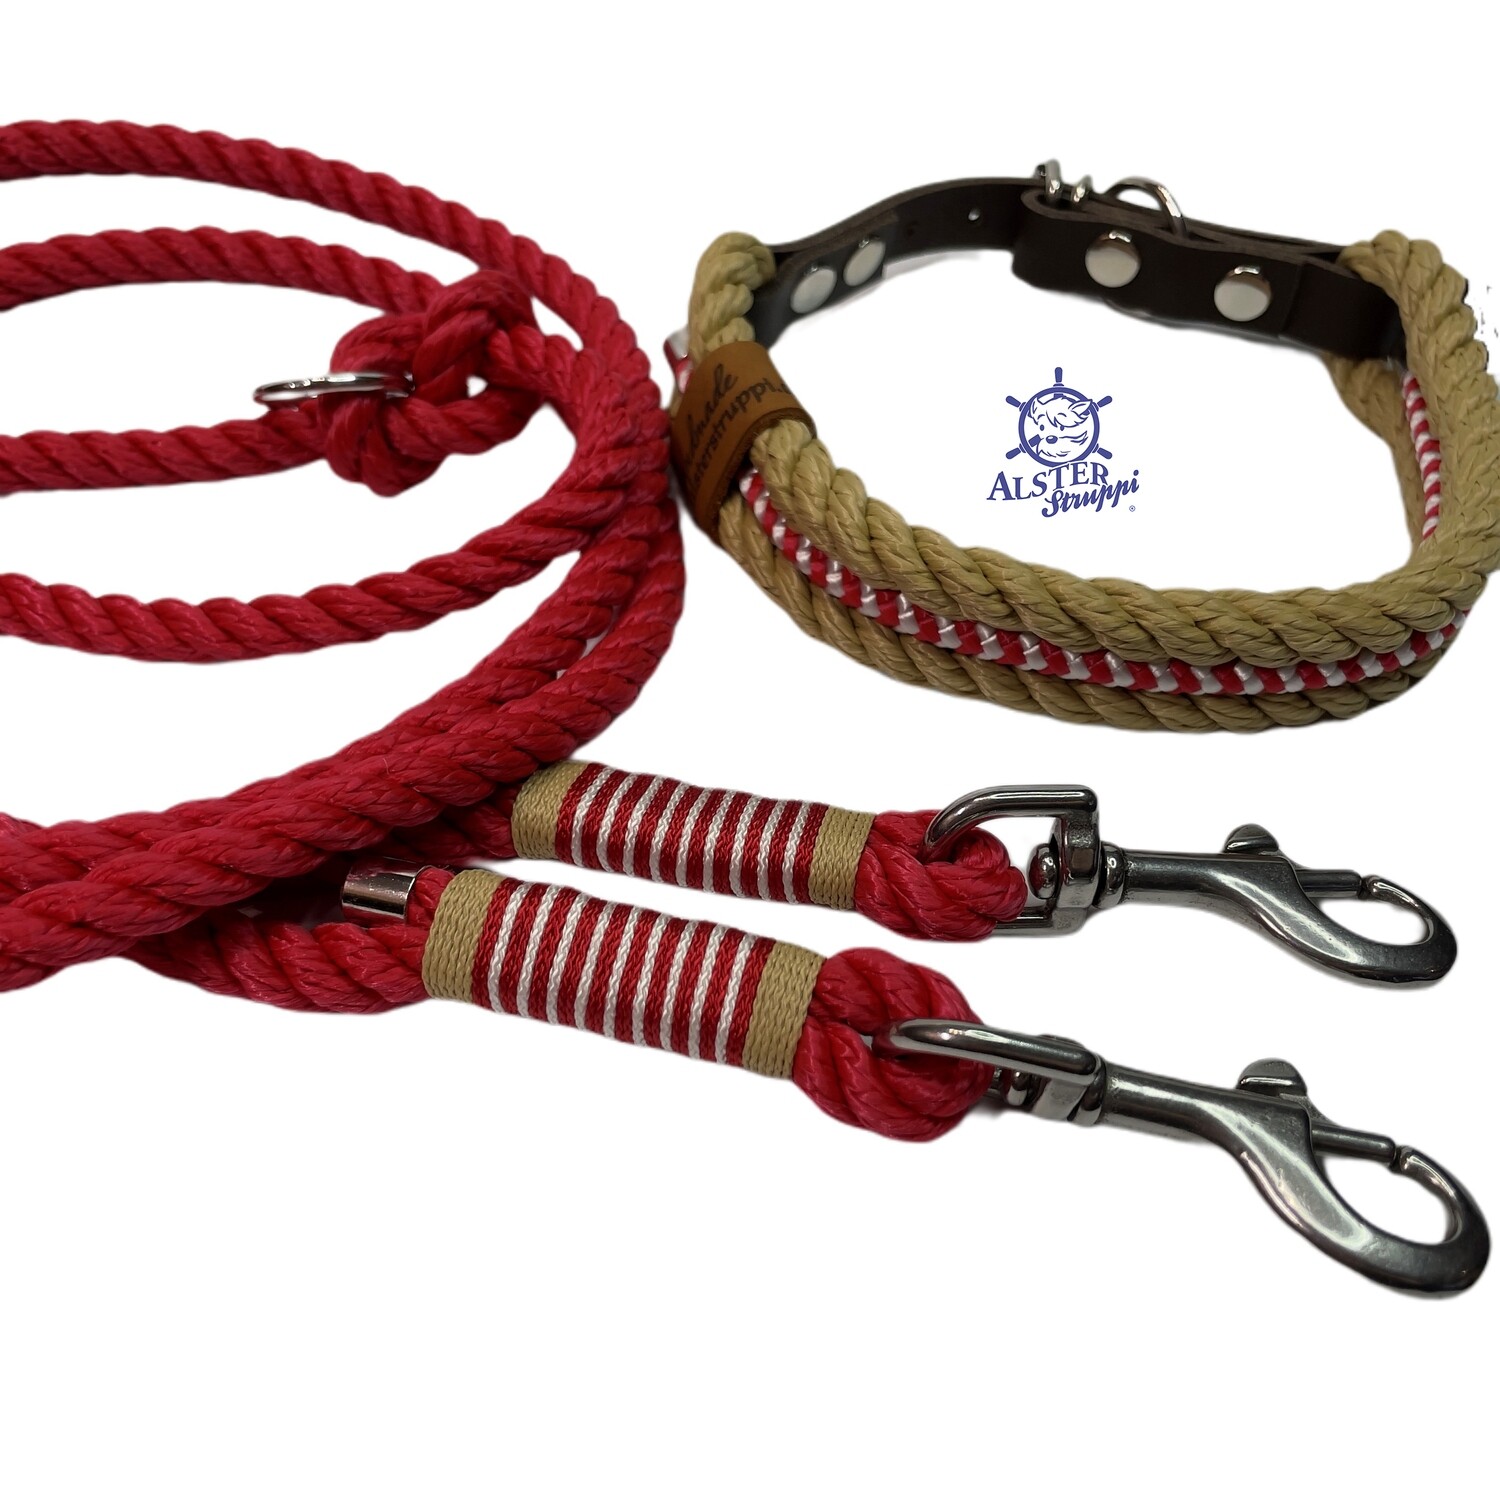 Leine Halsband Set verstellbar, rot, beige, weiß, ab 17 cm Halsumfang